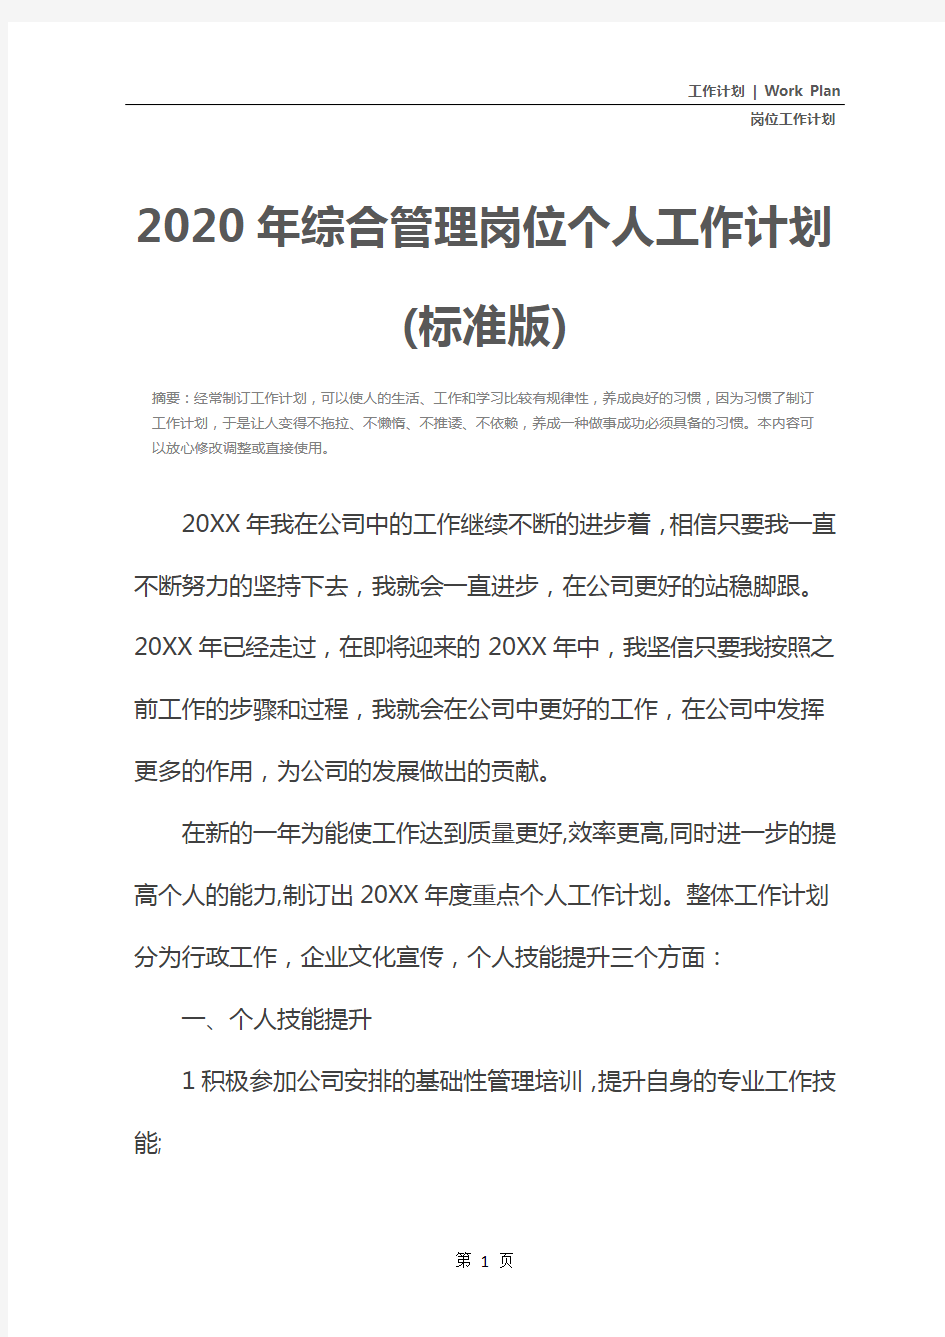 2020年综合管理岗位个人工作计划(标准版)